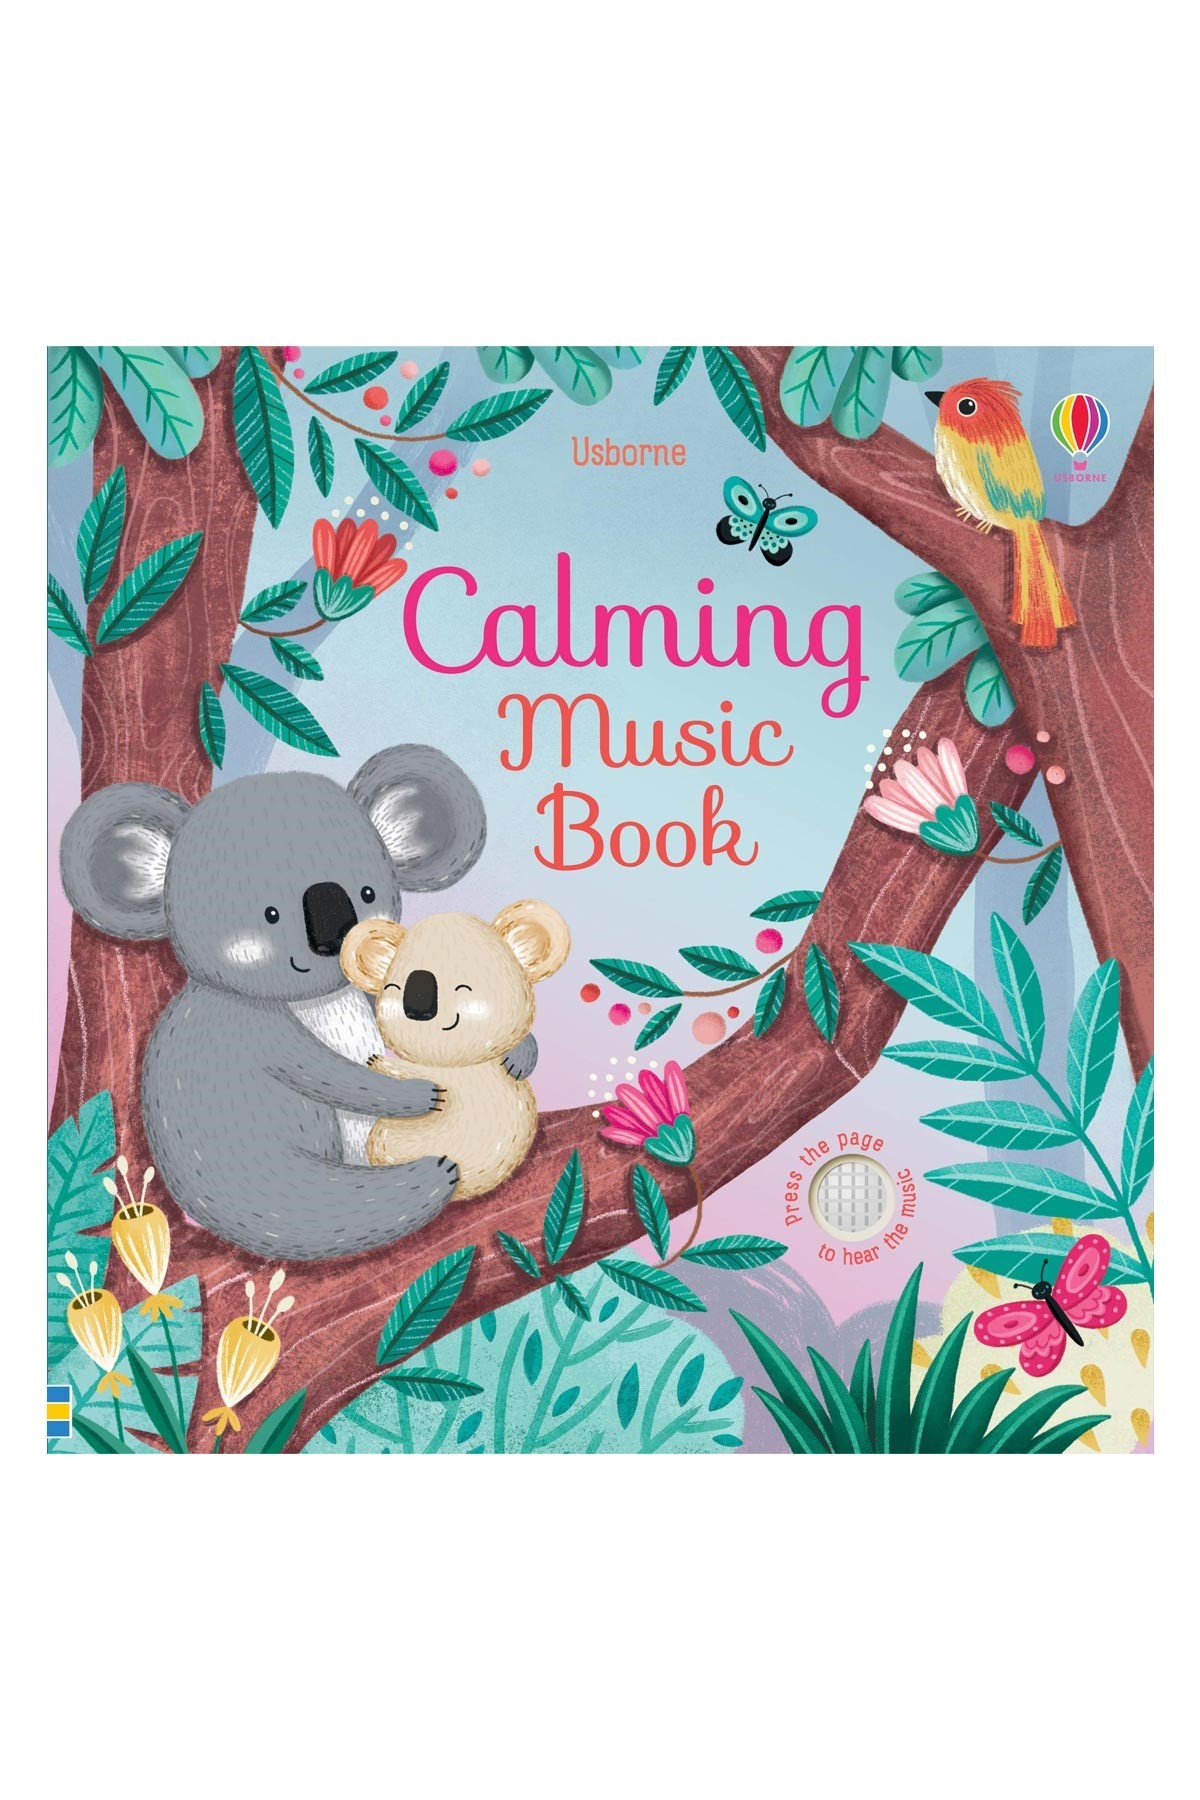 The Usborne Calming Music Book